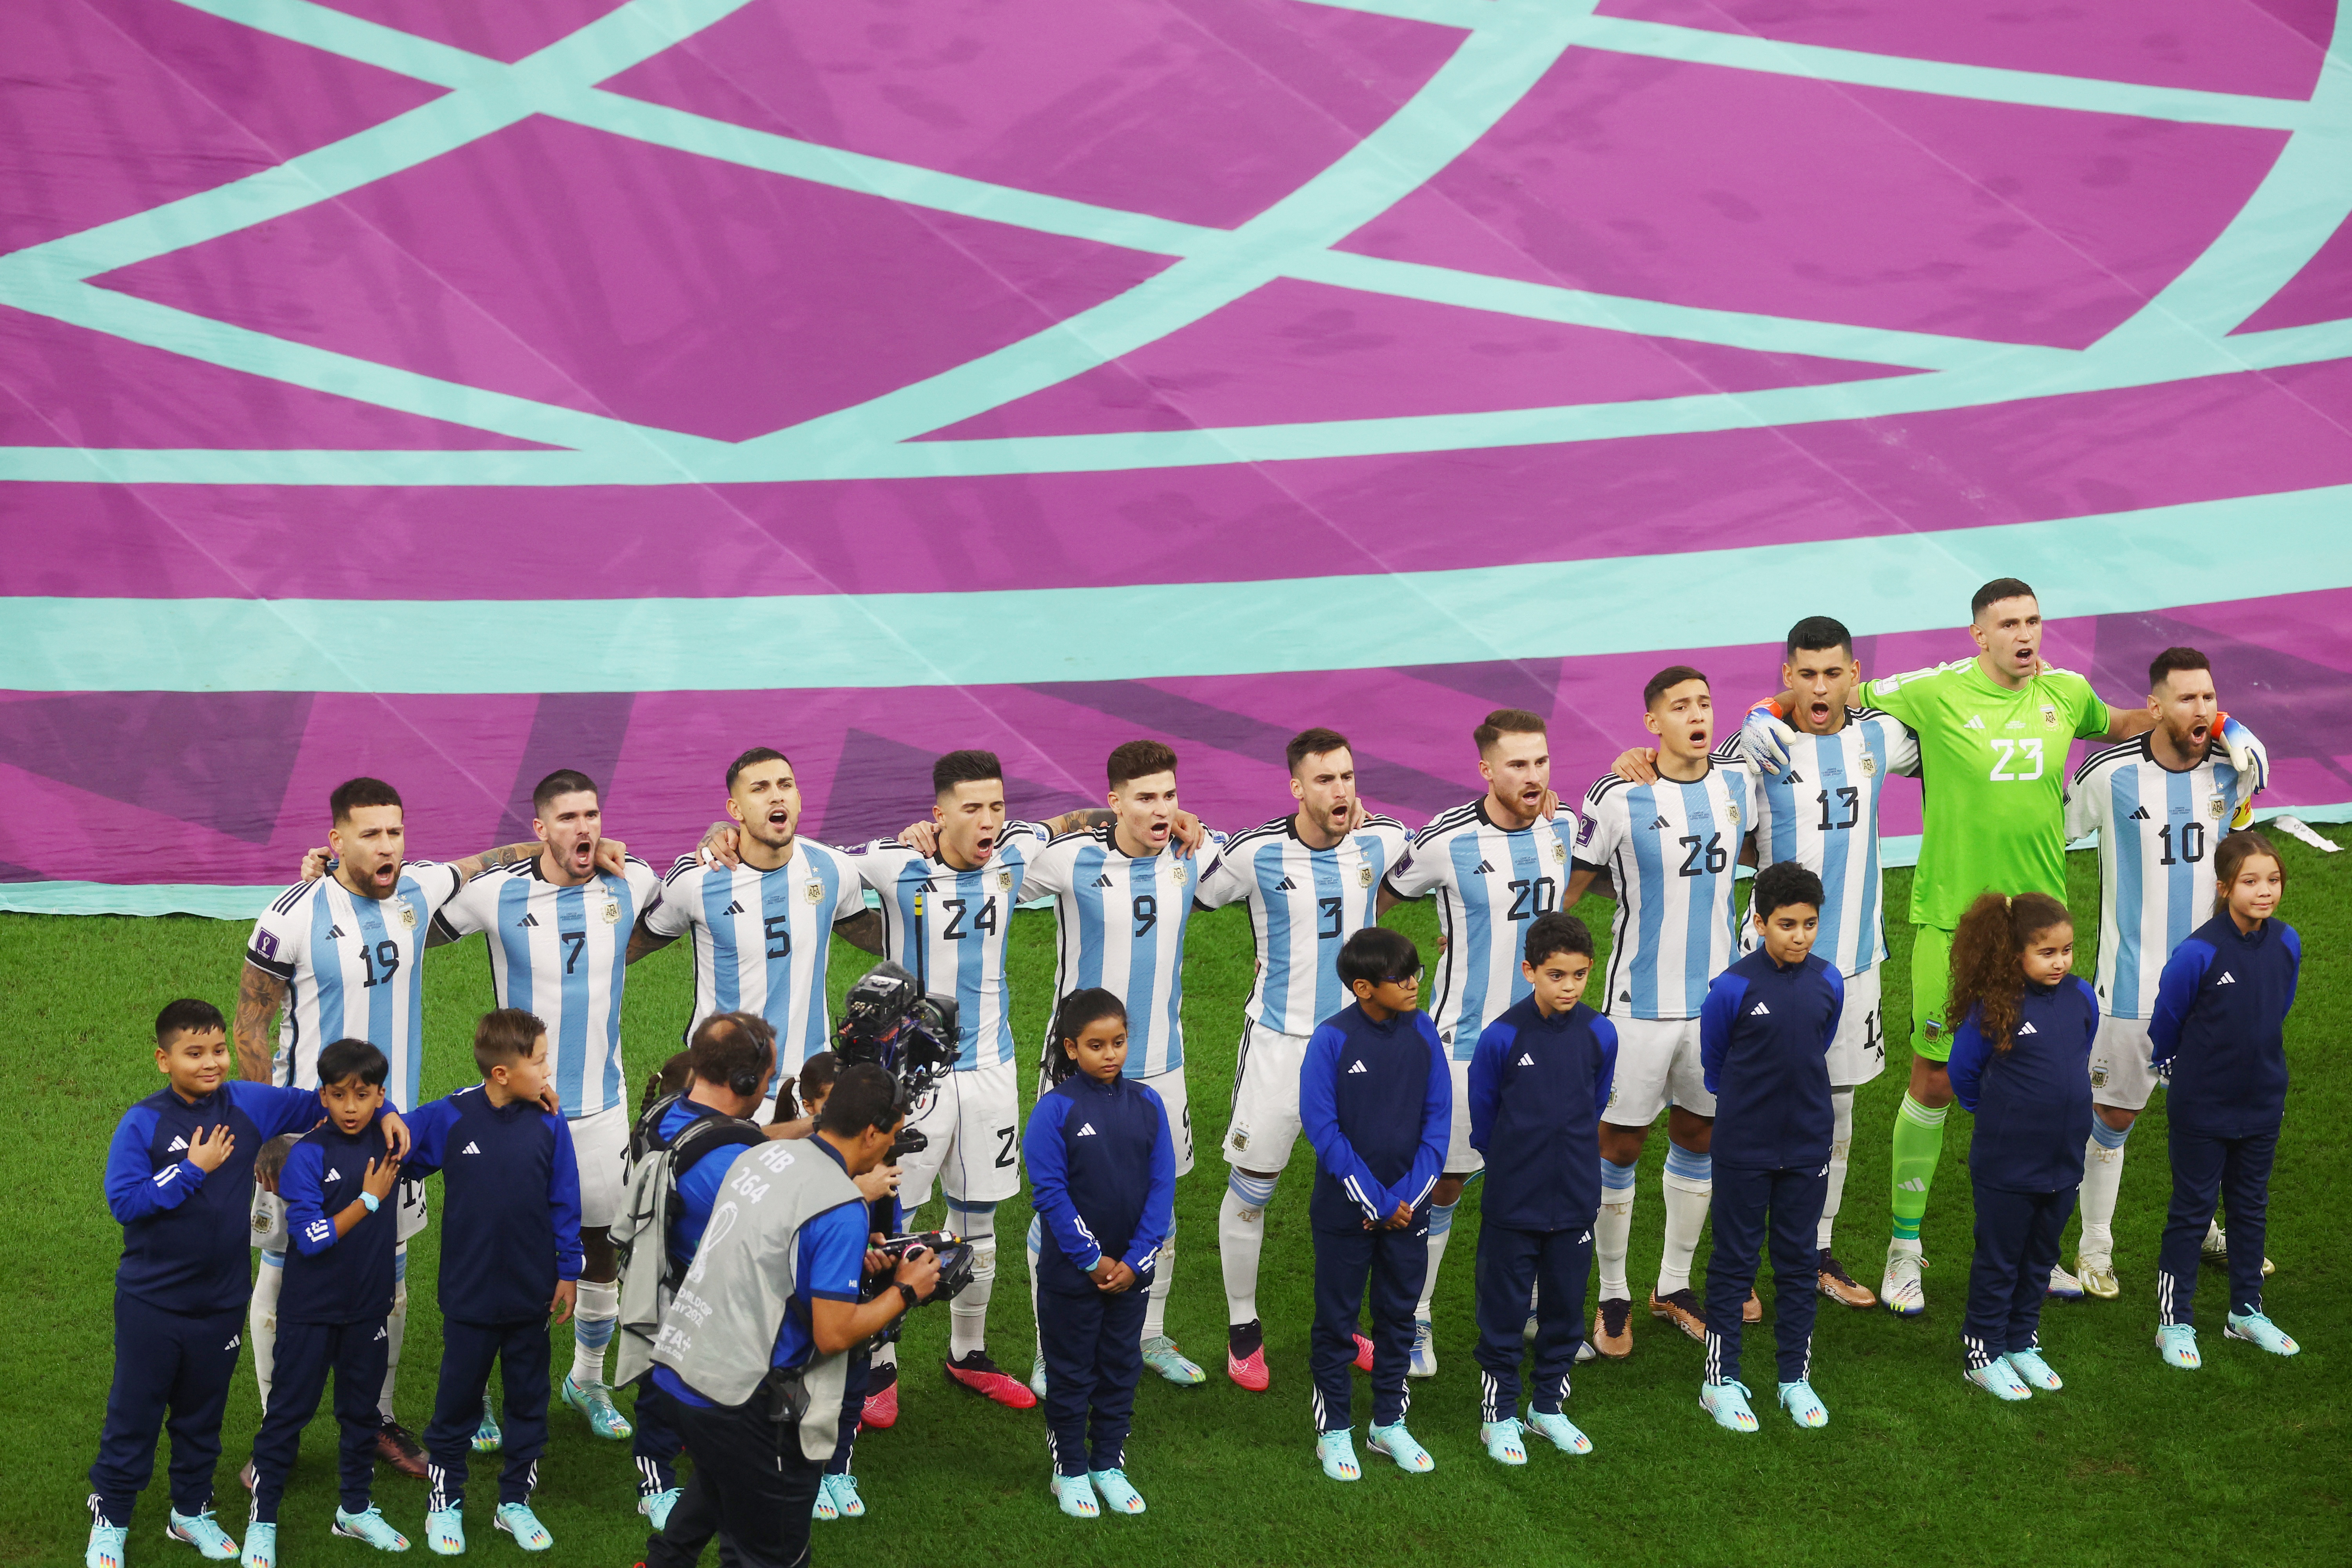 La selección argentina durante el himno ante Croacia (REUTERS/Paul Childs)